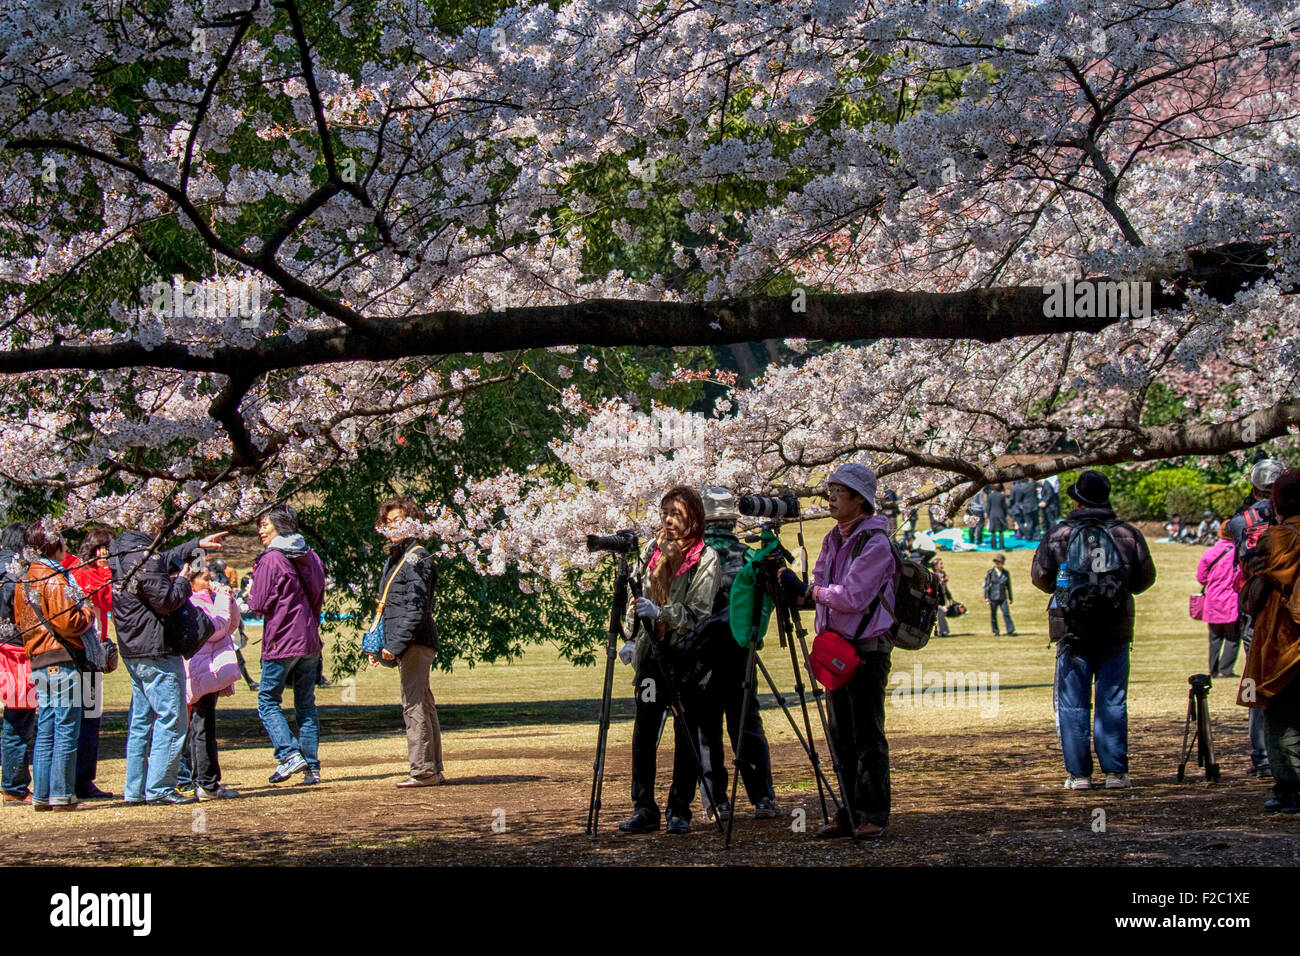 Fotografare i fiori di ciliegio durante la fioritura dei ciliegi celebrazione (chiamato hanami) a Tokyo Foto Stock